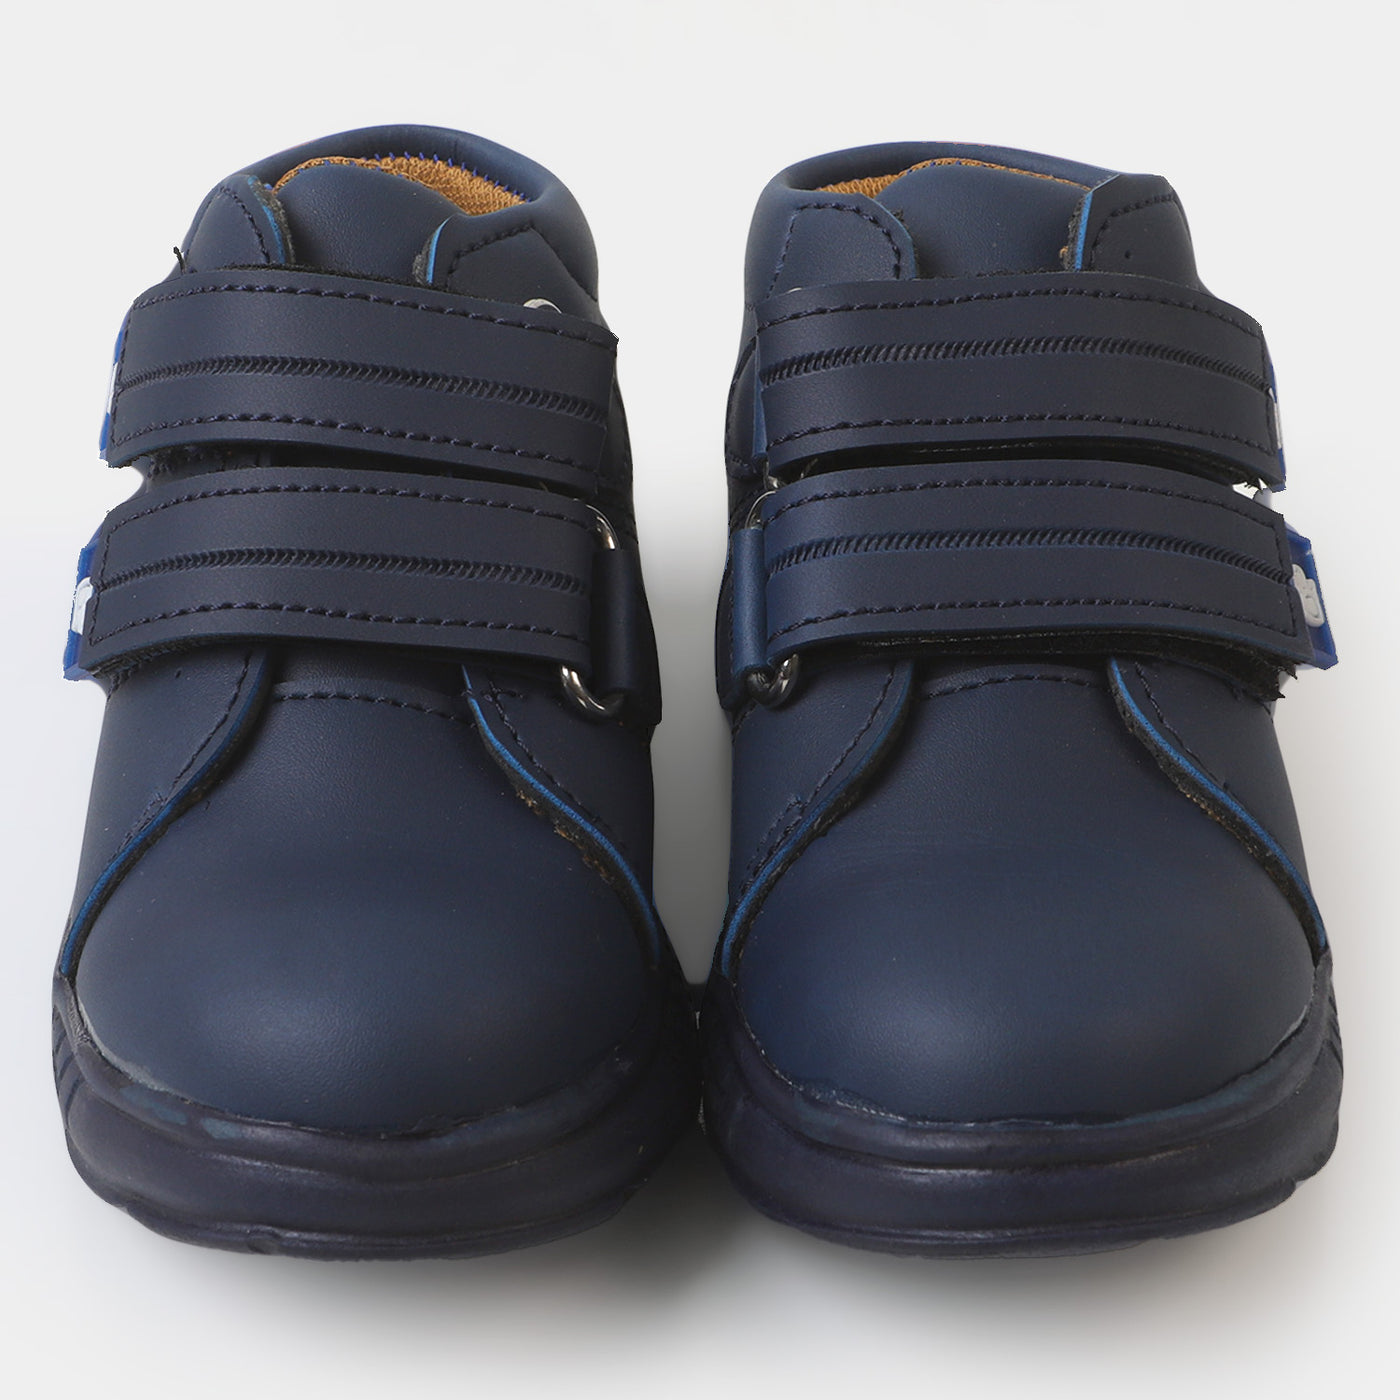 Boys Sneakers SK-3 -  Navy